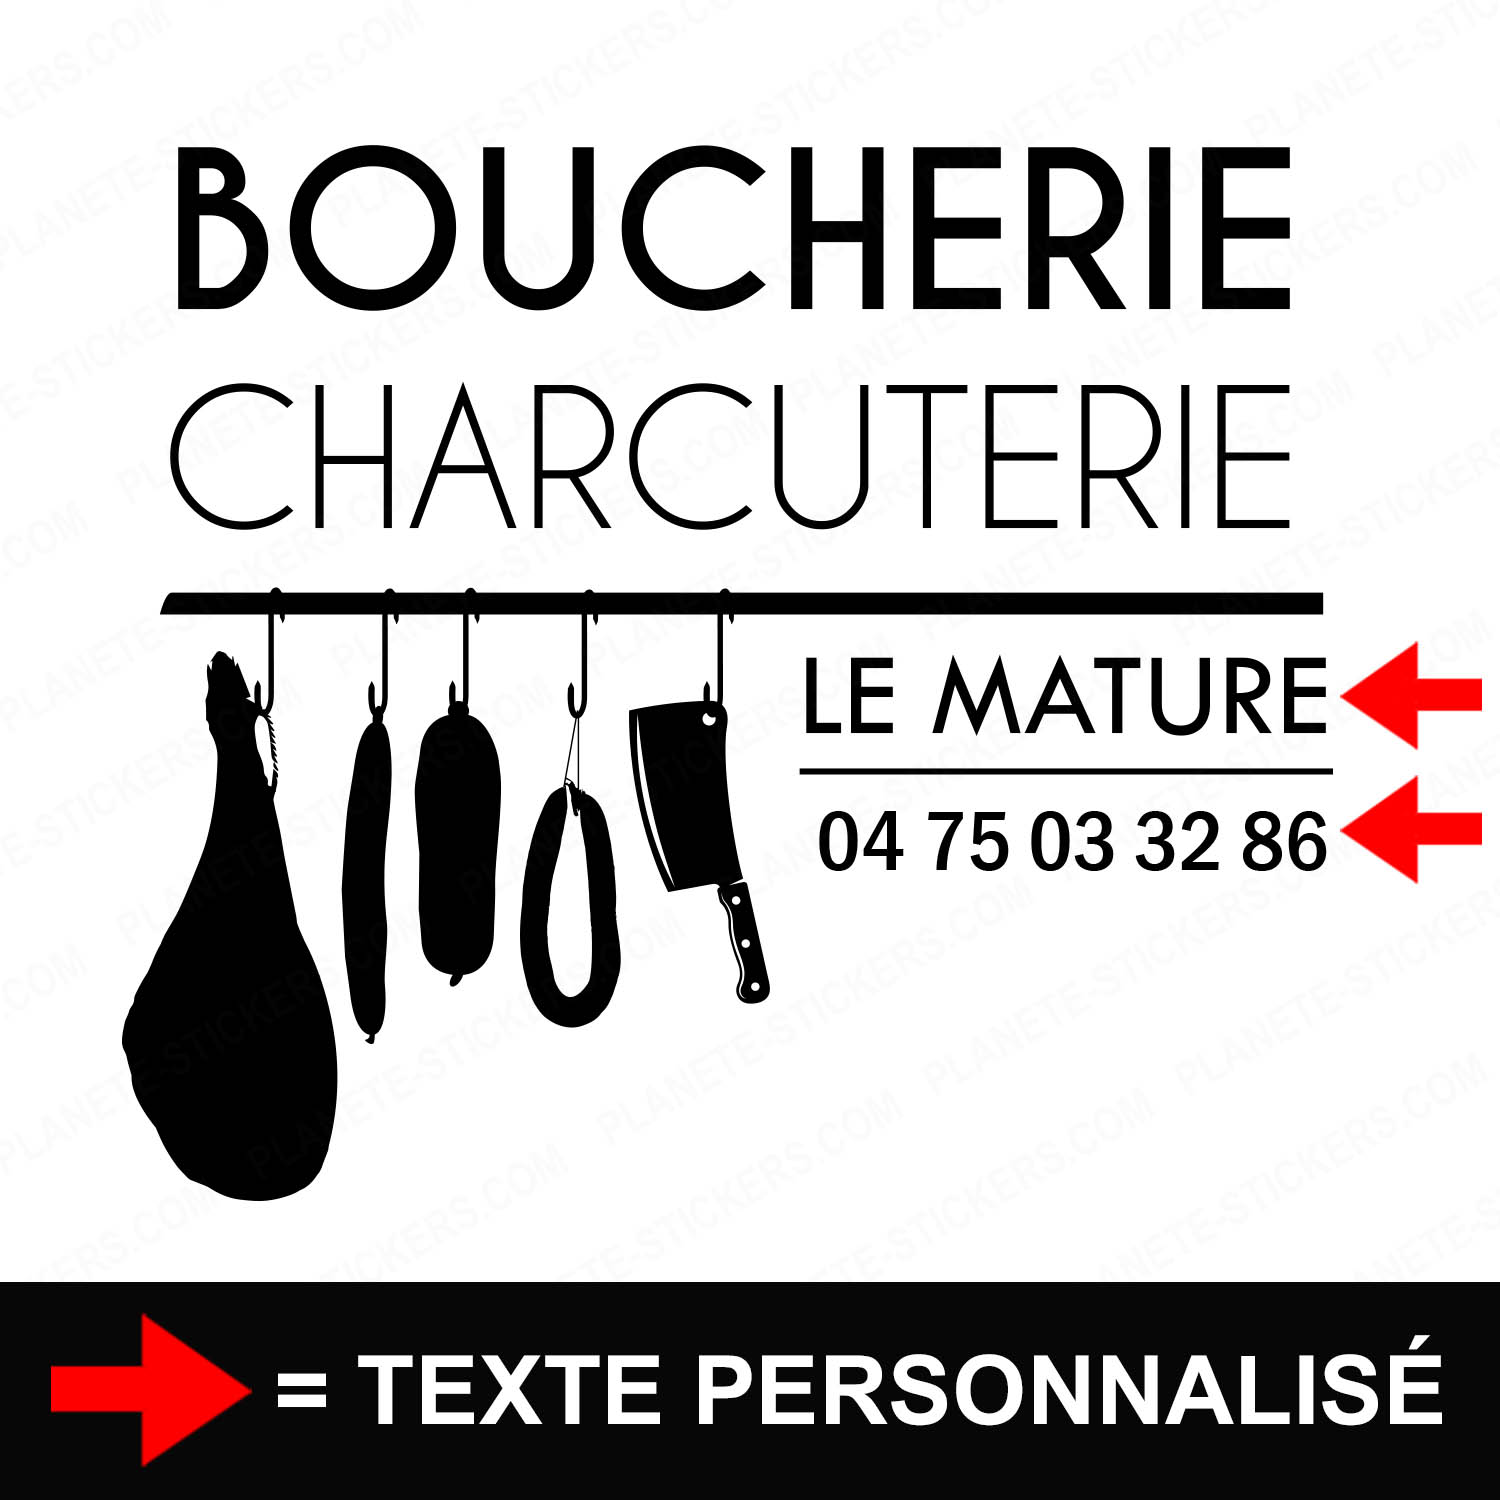 ref3boucherievitrine-stickers-boucherie-charcuterie-vitrine-sticker-personnalisé-autocollant-boutique-pro-boucher-charcutier-professionnel-2